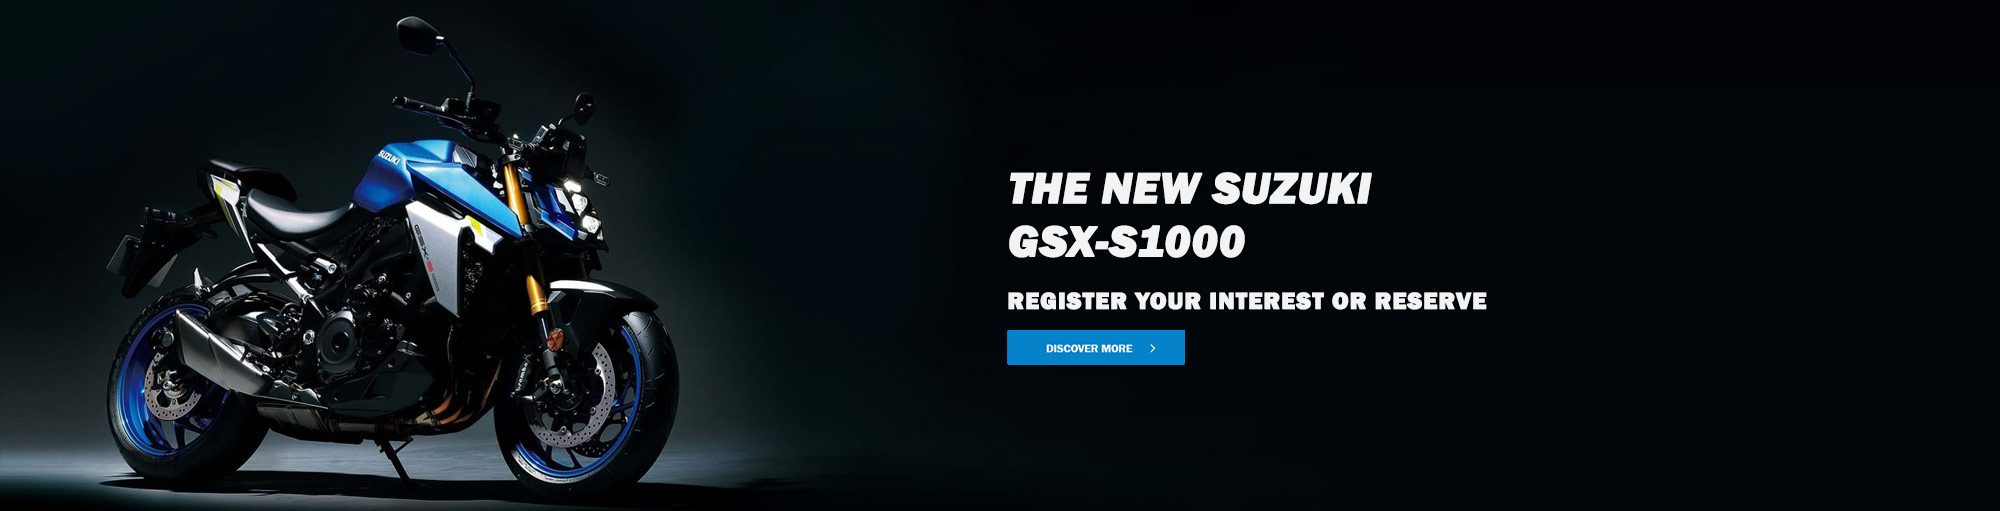 The new Suzuki GSX-S1000